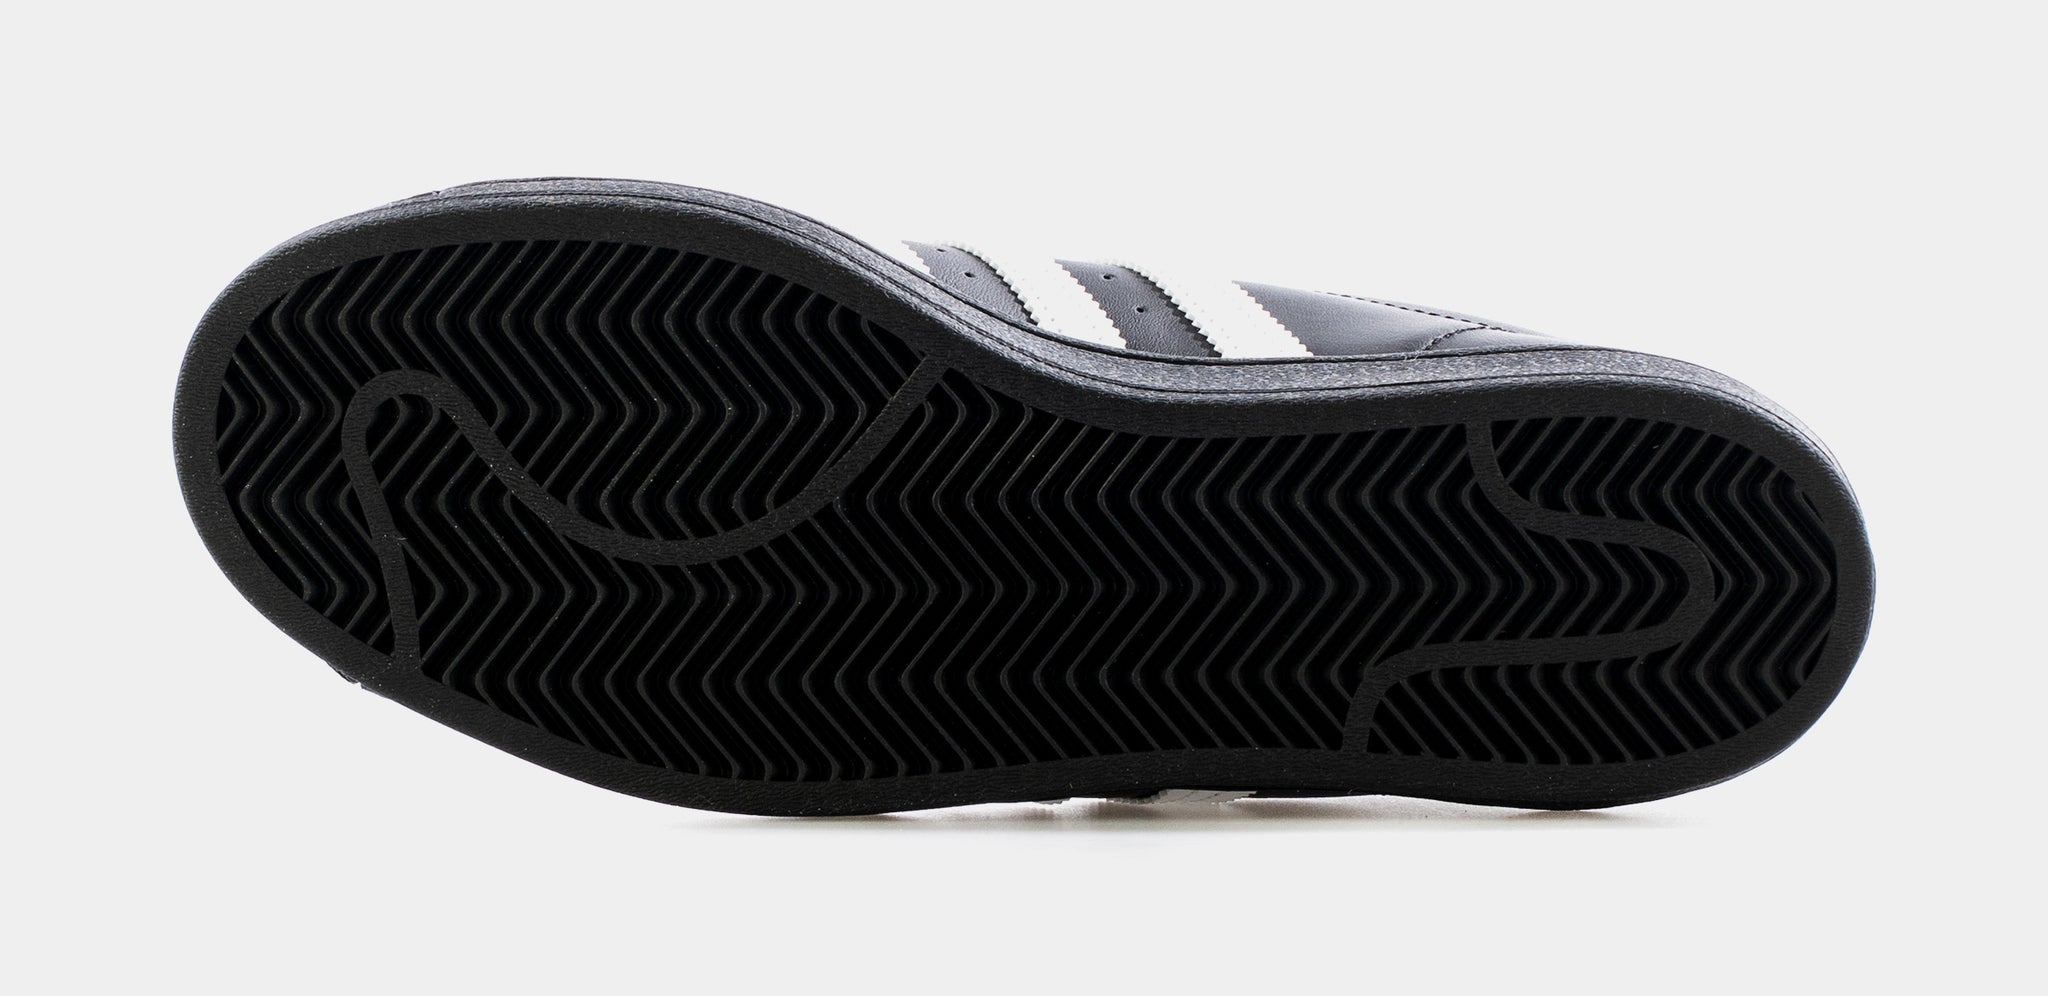 adidas Superstar Mens Lifestyle Shoe Black White EG4959 Shoe Palace